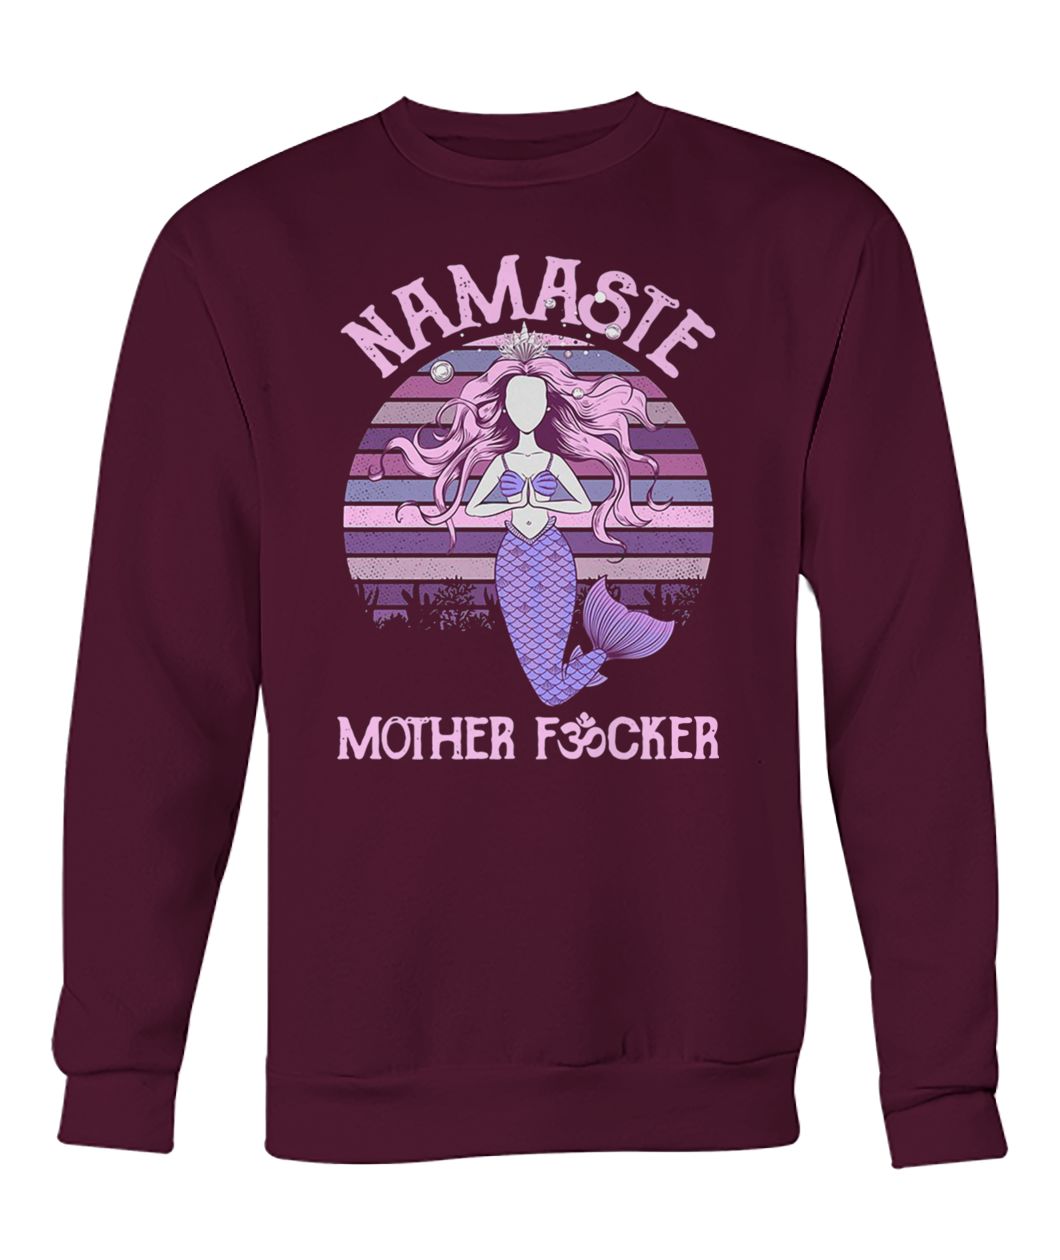 Yoga mermaid namaste mother fucker crew neck sweatshirt